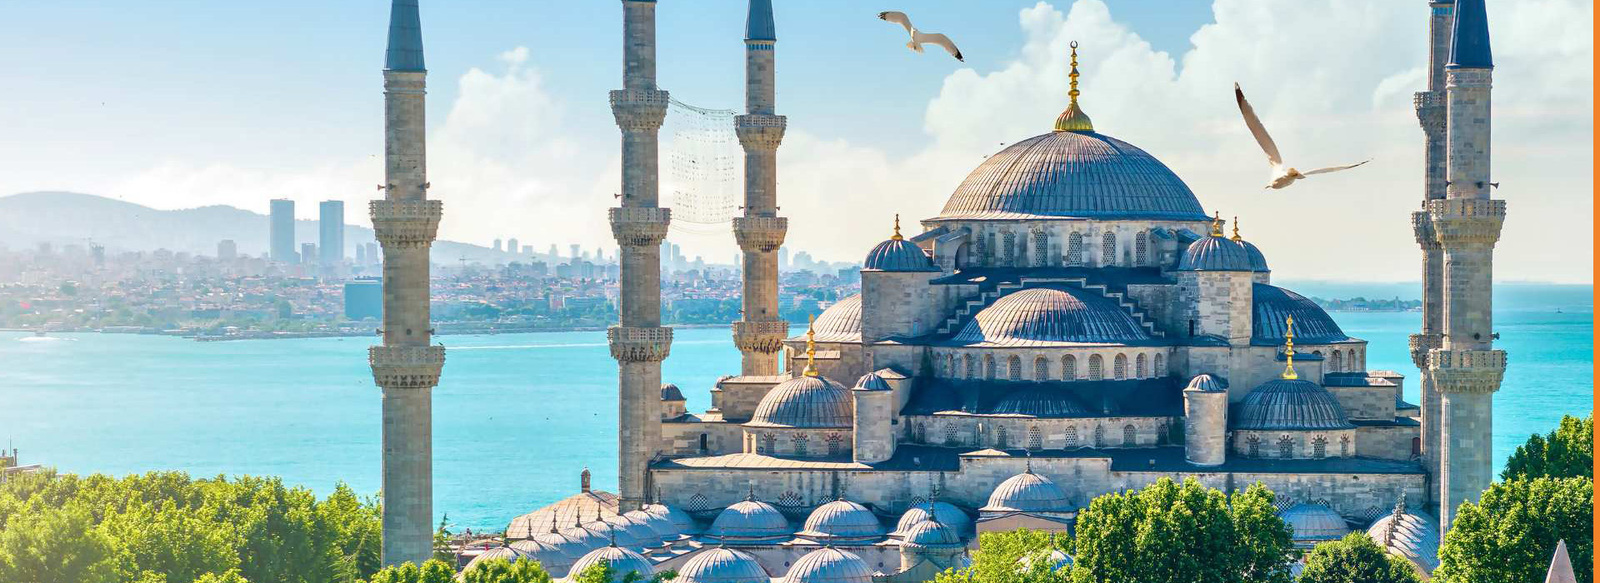 Tra le bellezze archeologiche e marine della Turchia